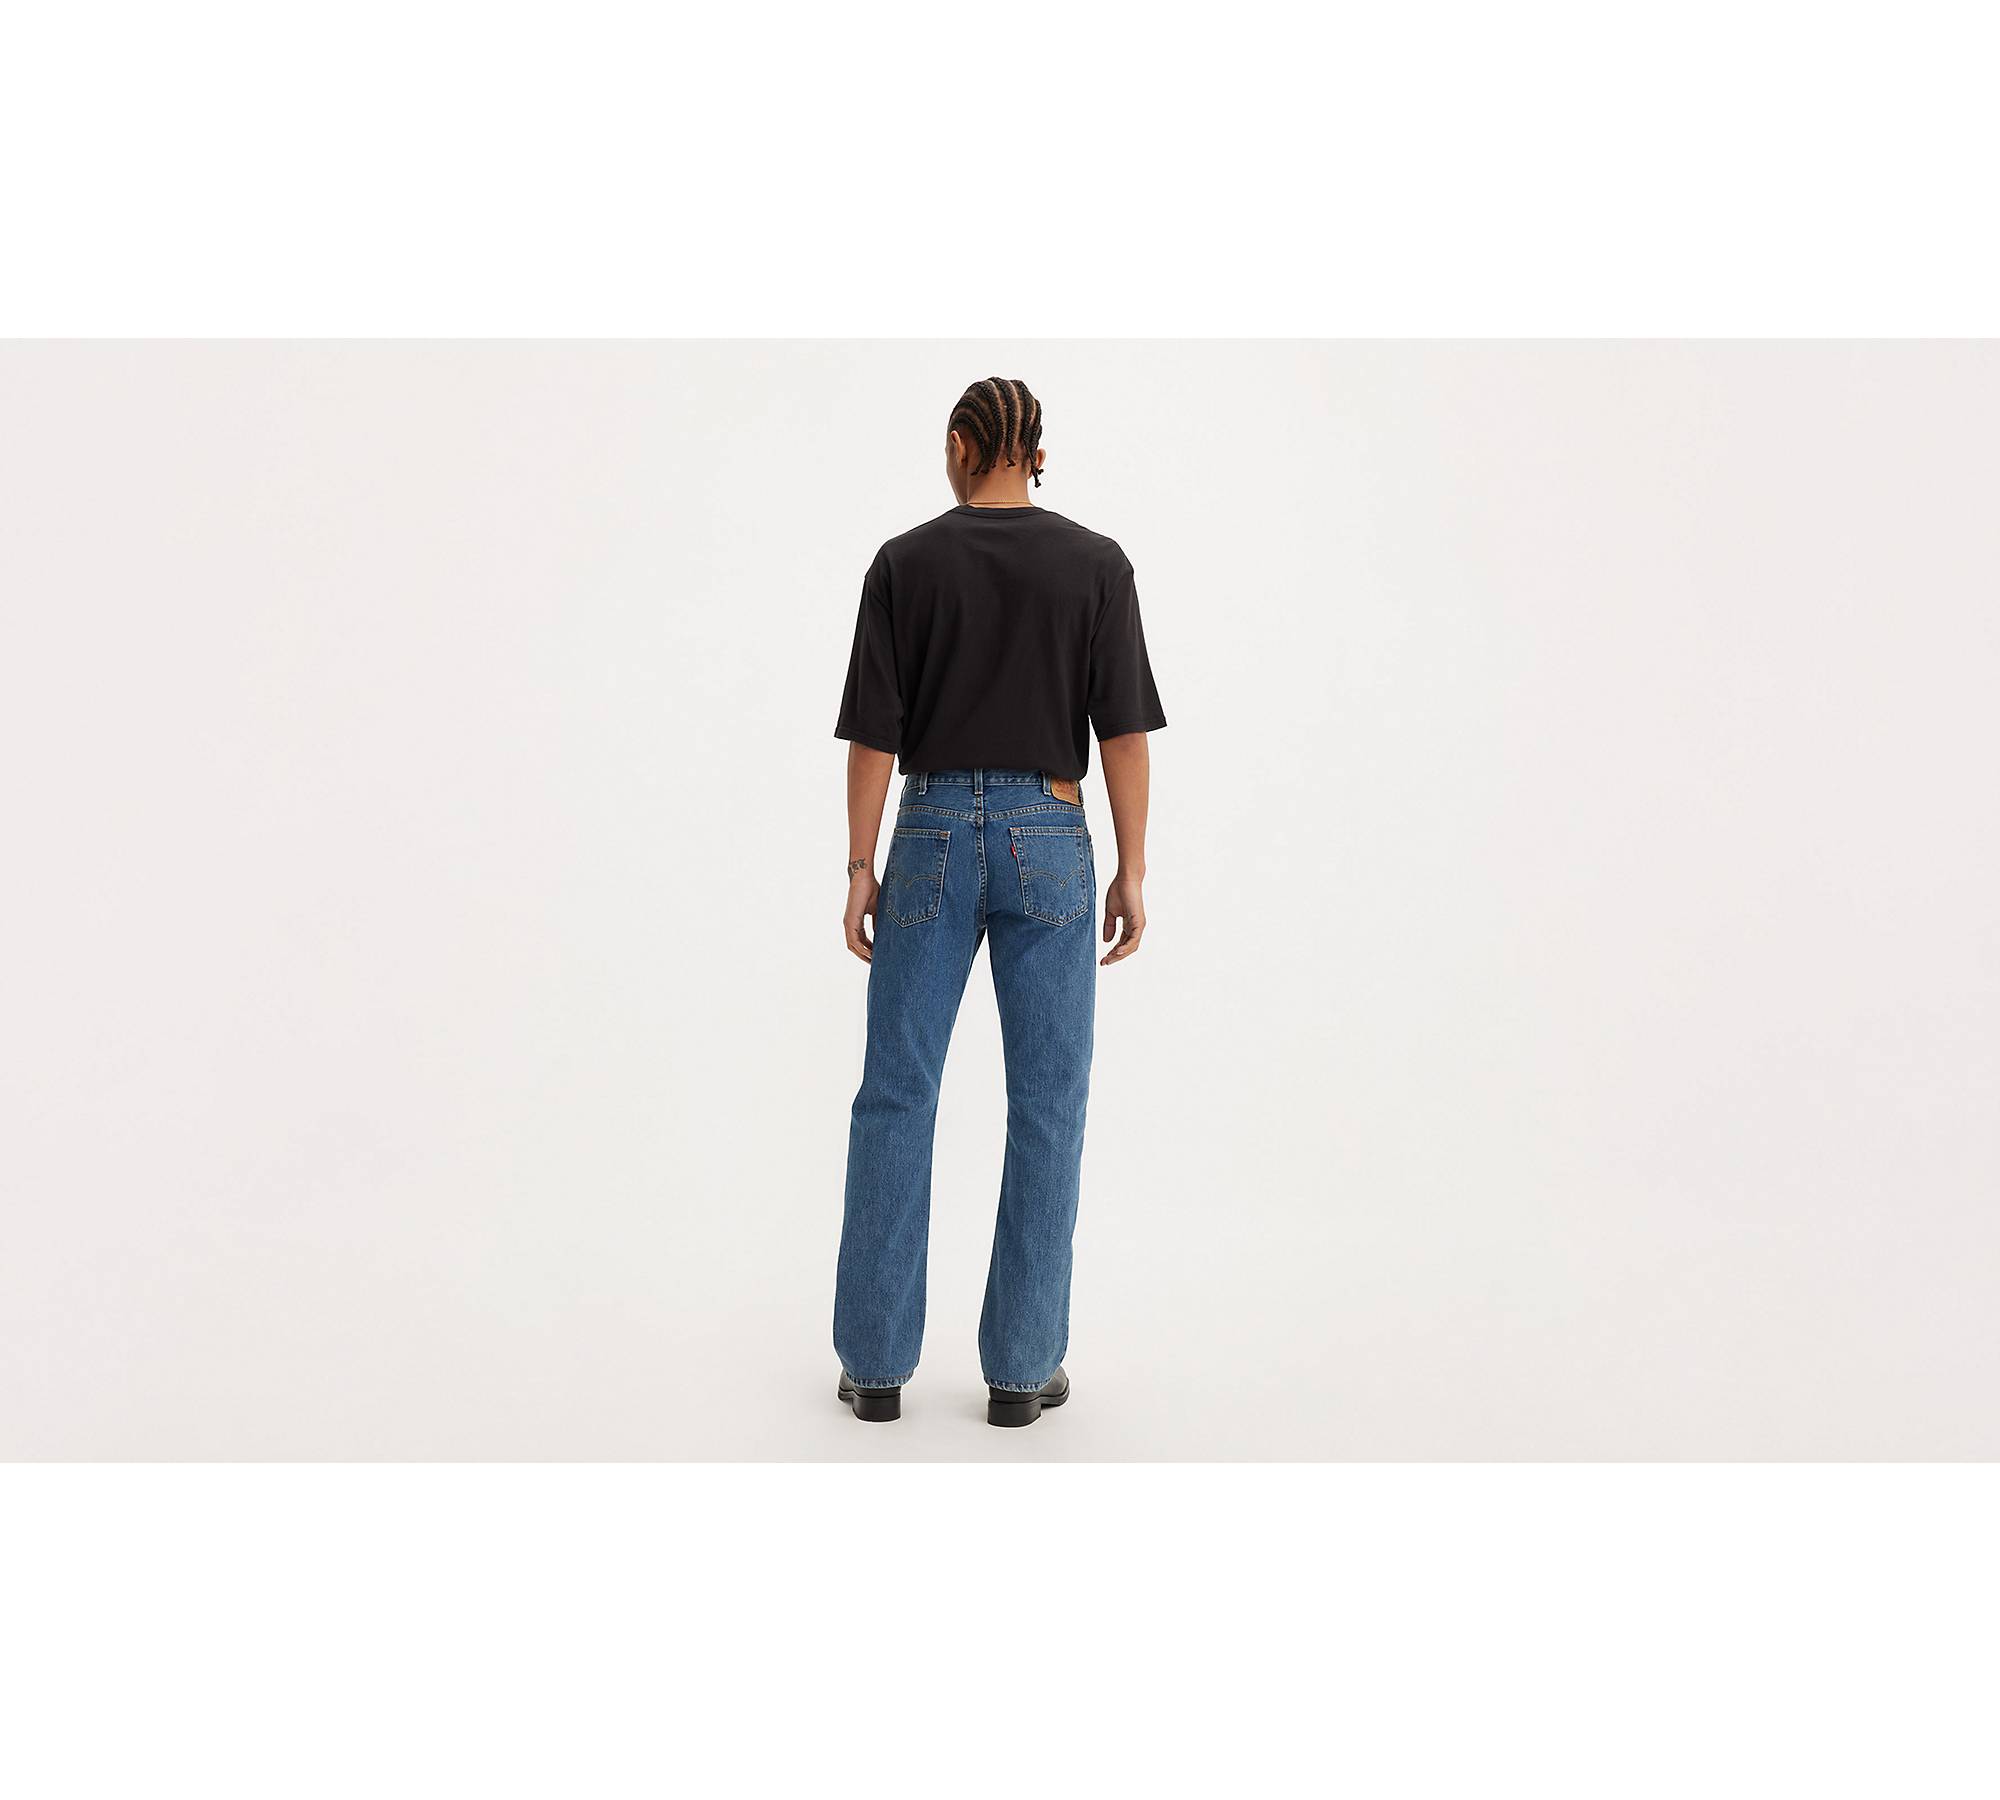 Levi's 501 SF Jeans Beige Tan Denim Button Fly Jeans Men's Size 42x30